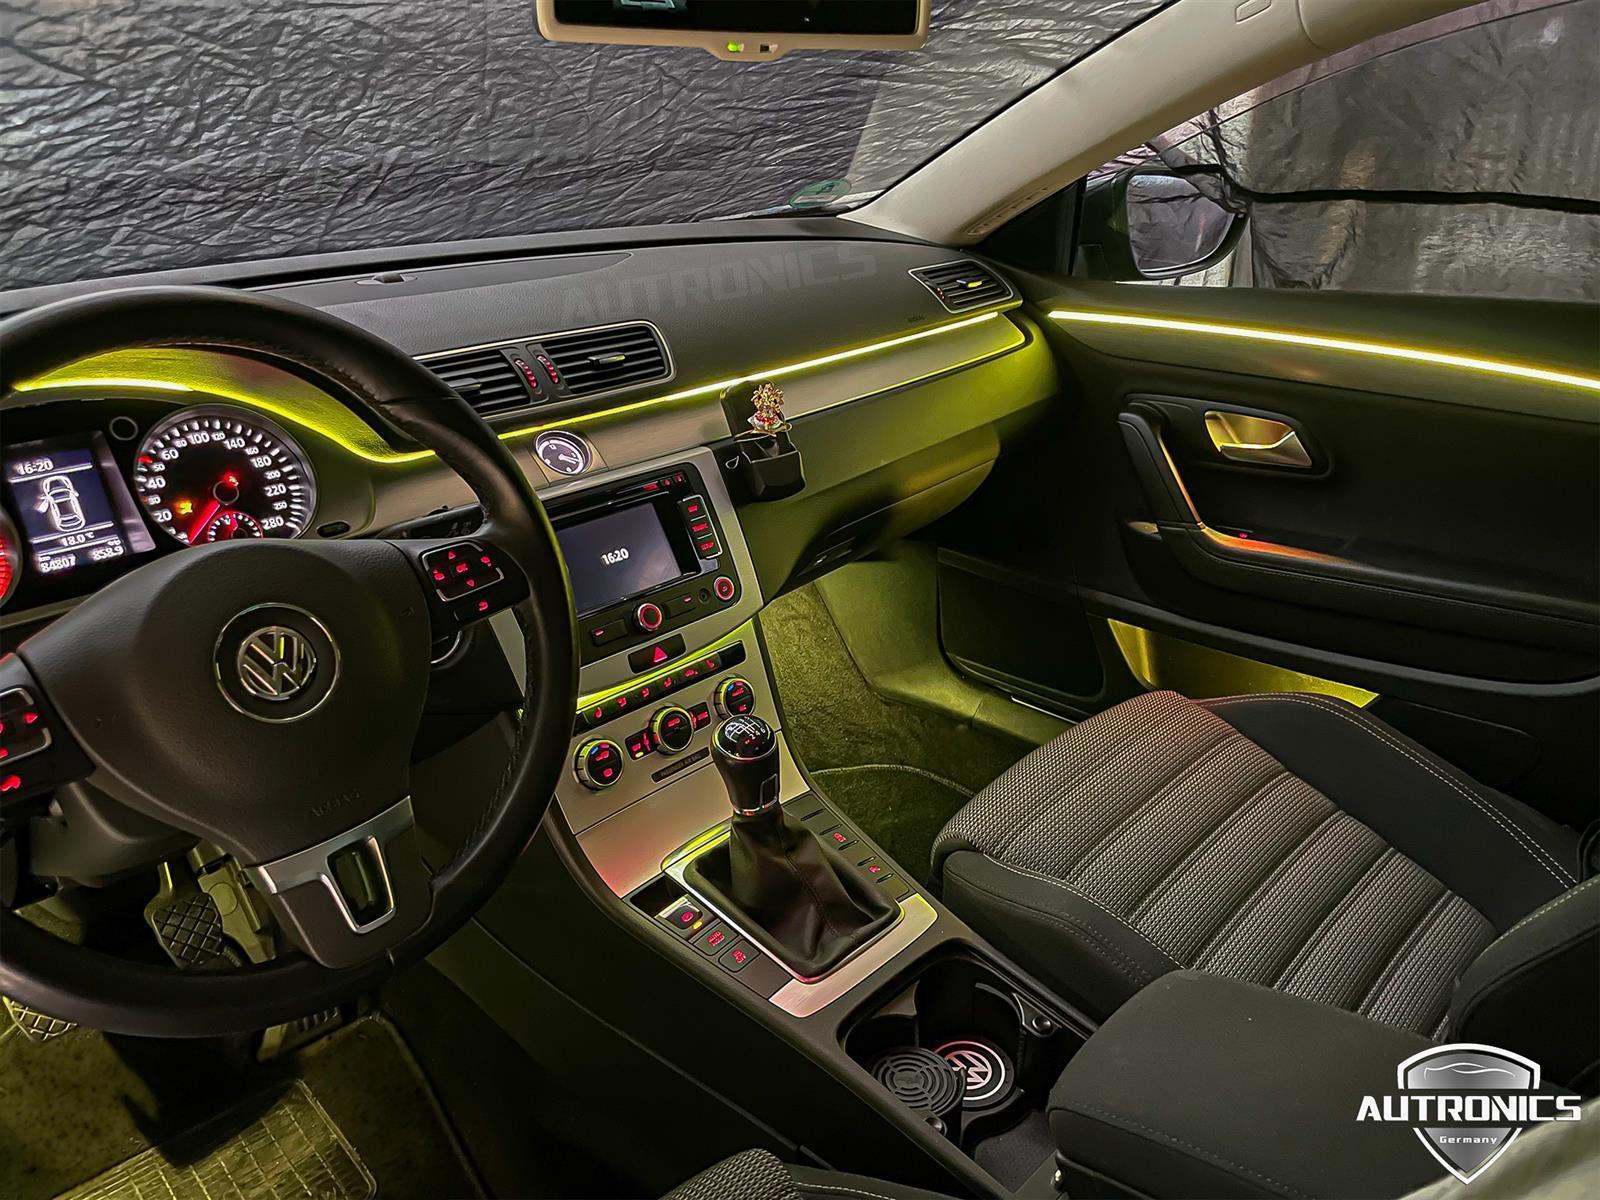 Ambientebeleuchtung Nachrüsten im Auto Innenraumbeleuchtung Beleuchtung geeignet für VW Passat CC - 01